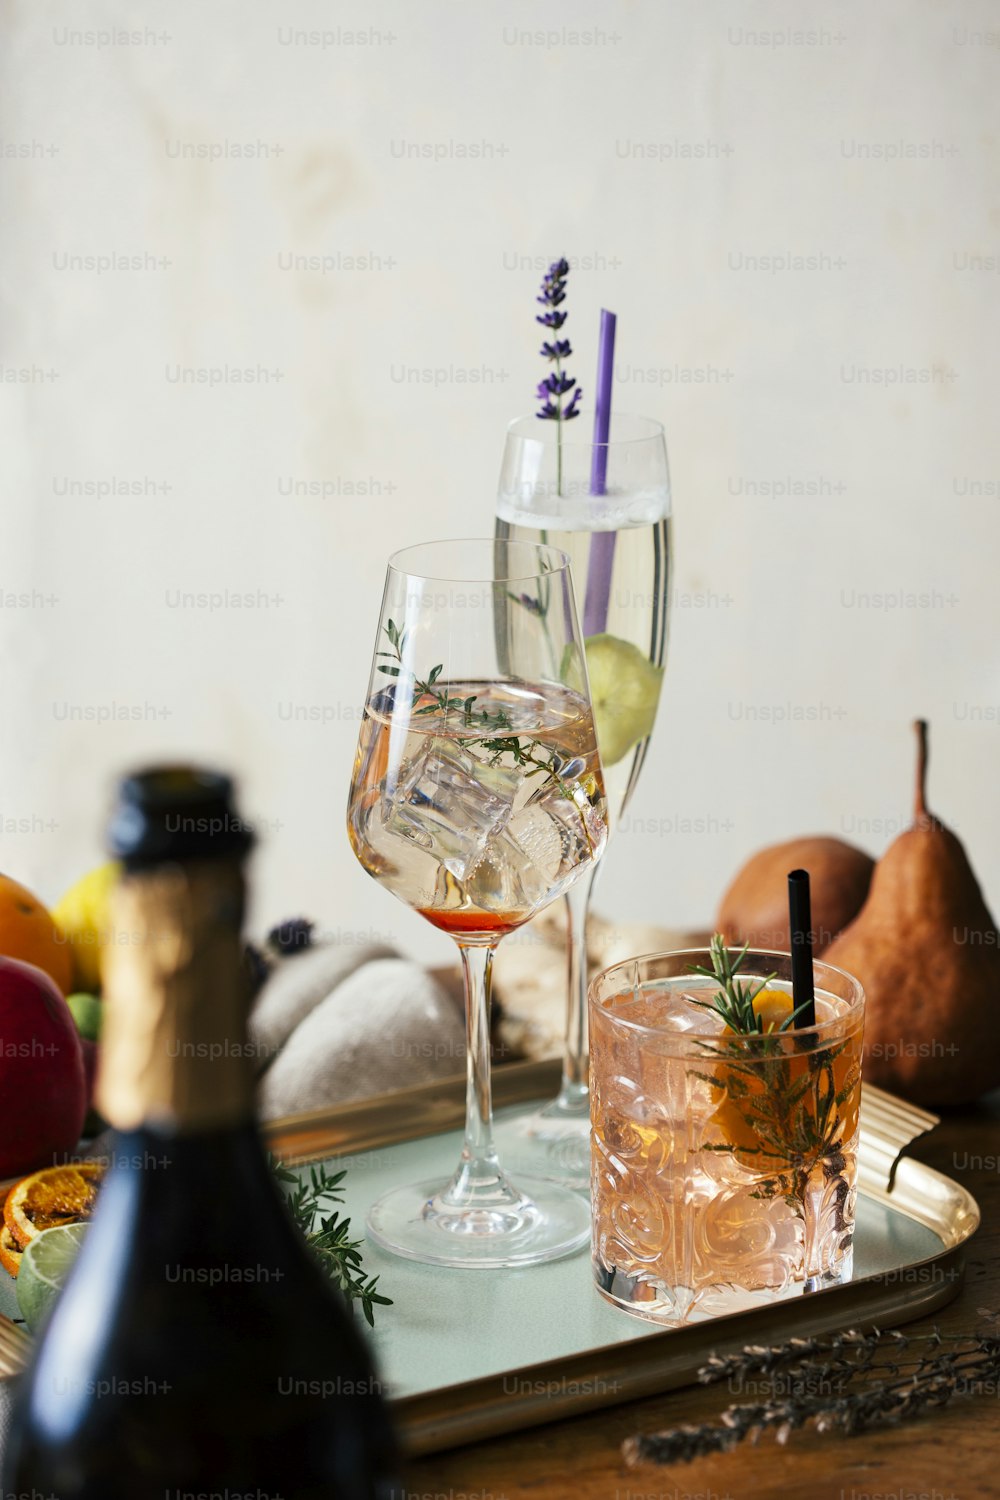 Cocktail a base di prosecco, aperitivo con prosecco, vino bianco frizzante, amaro, timo e bacche di ginepro; Prosecco, lime e lavanda; e Prosecco, arancia e rosmarino